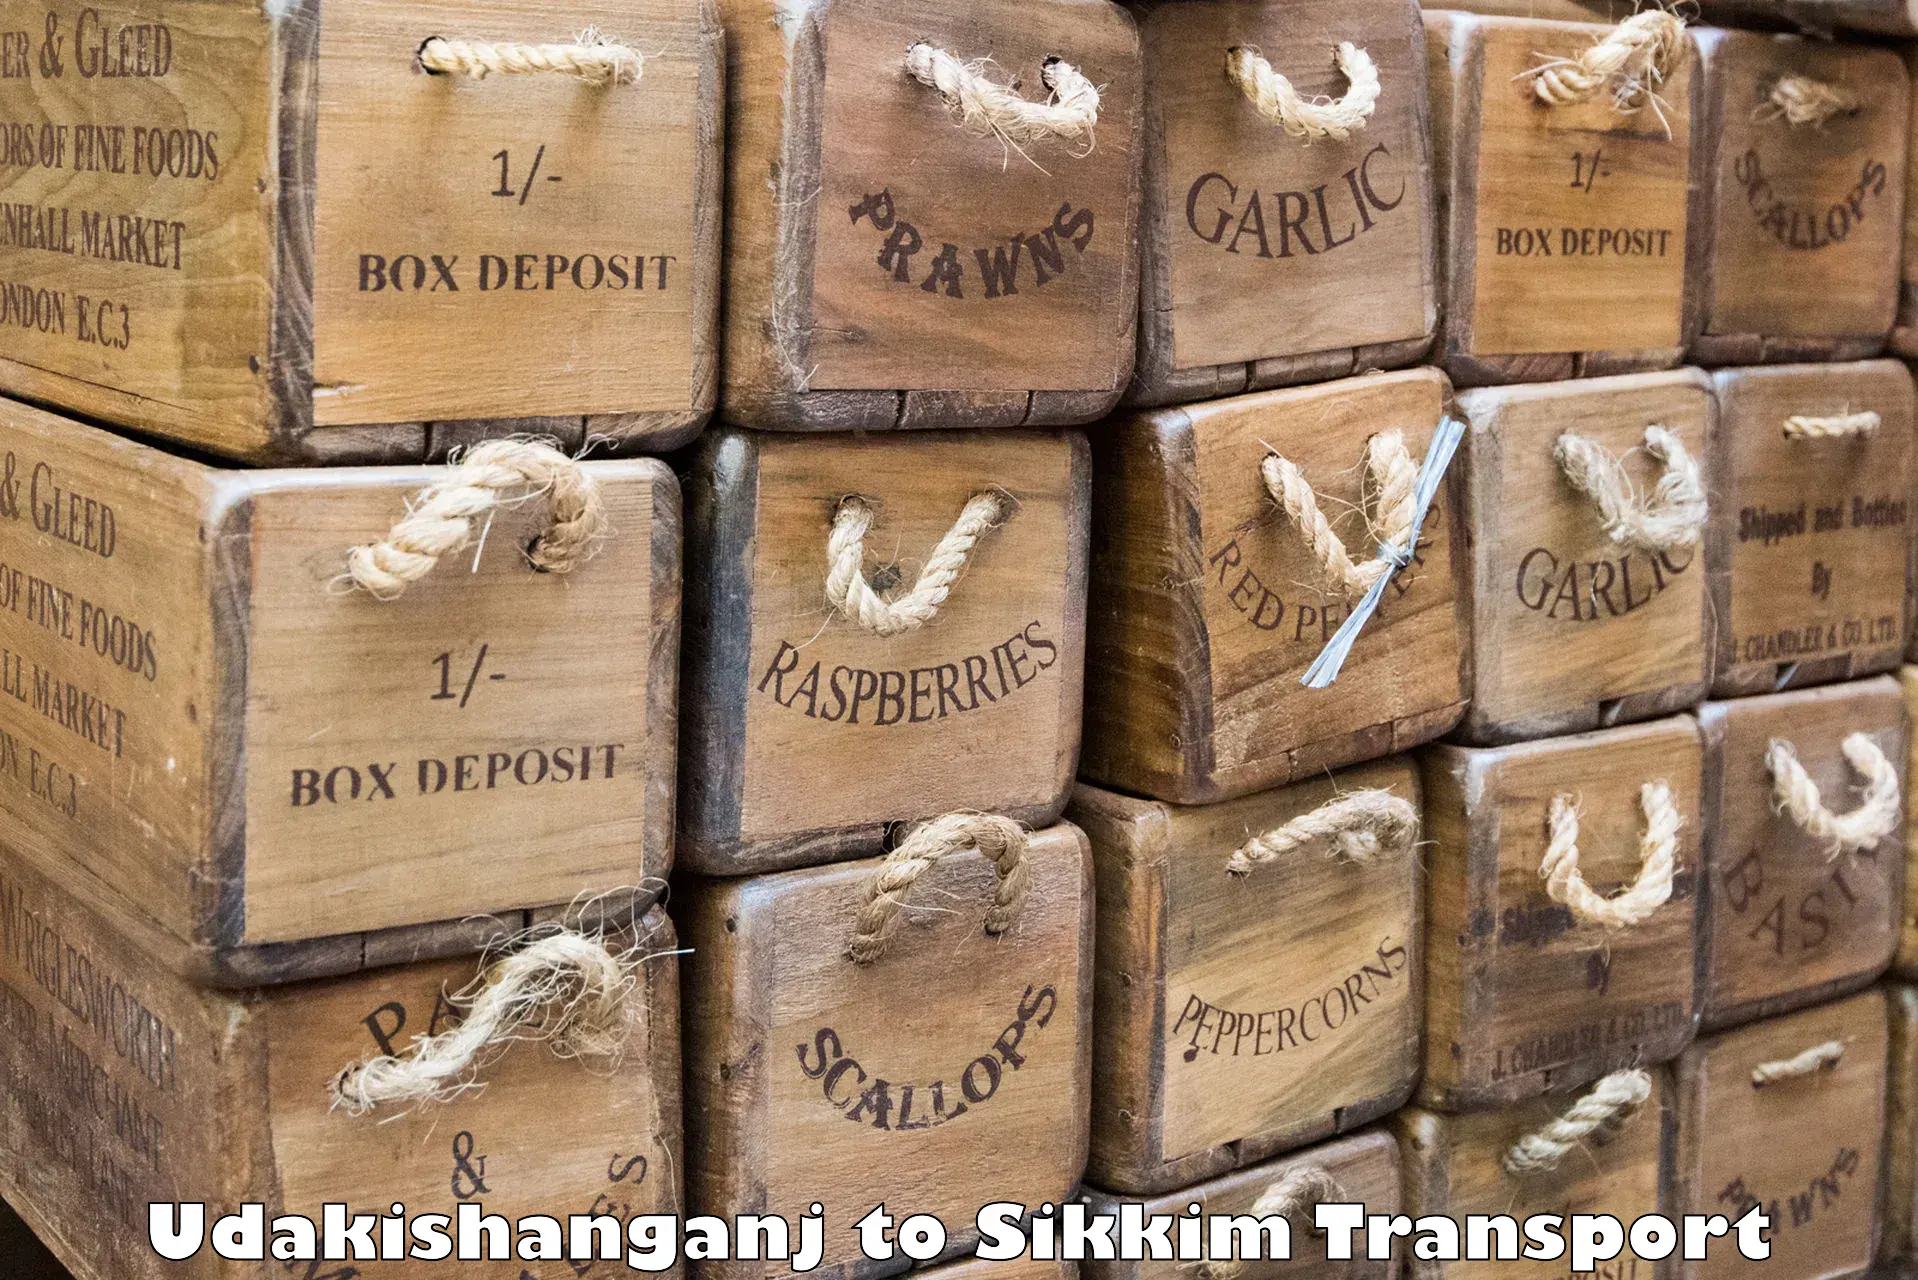 Container transportation services Udakishanganj to Gangtok